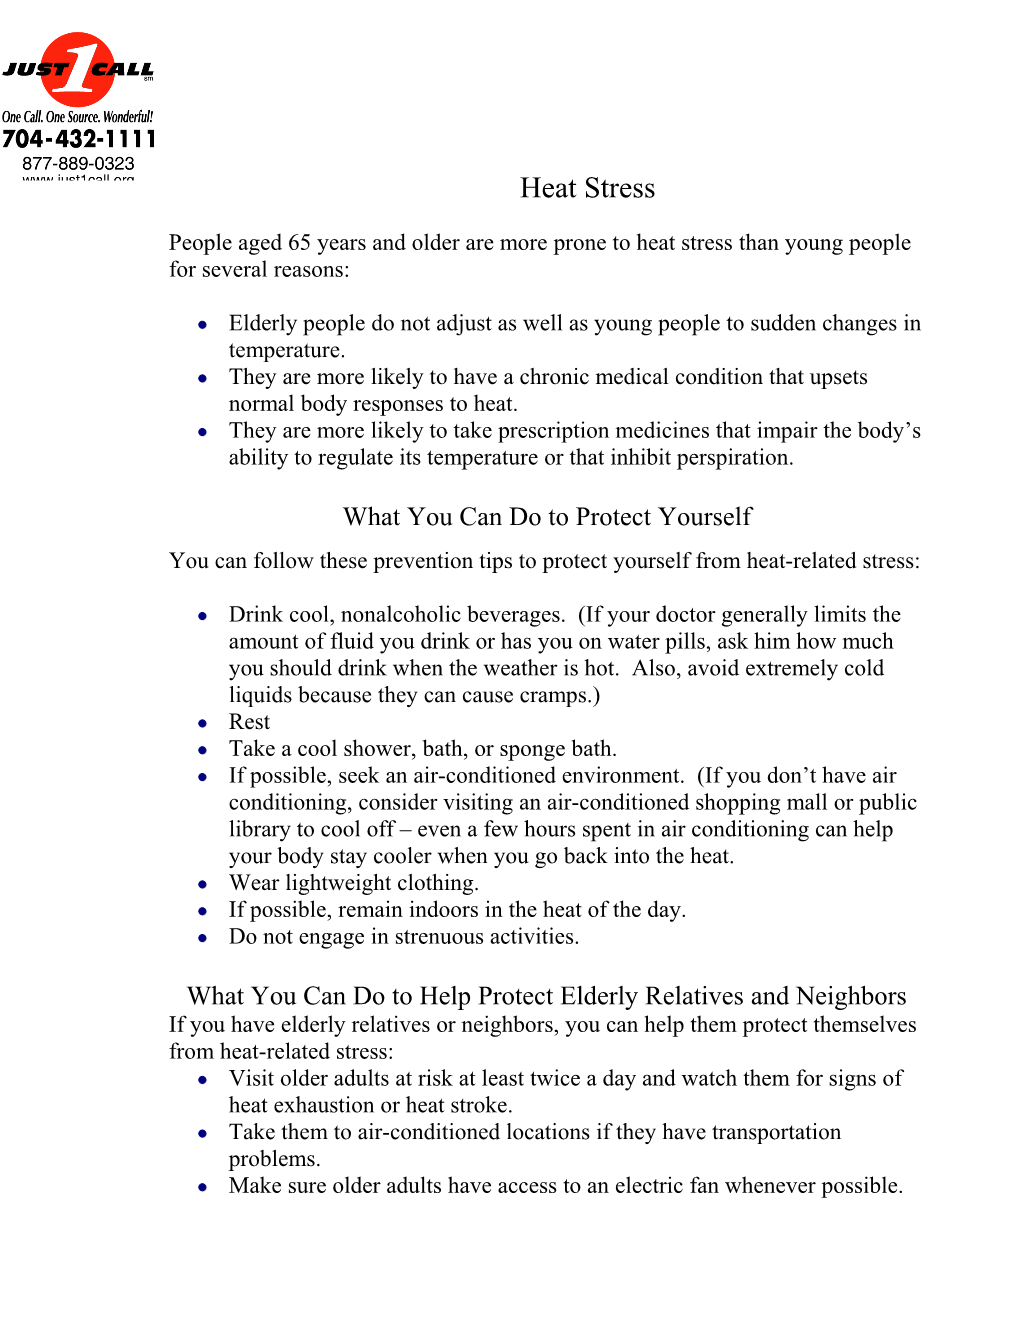 Heat Stress in the Elderly